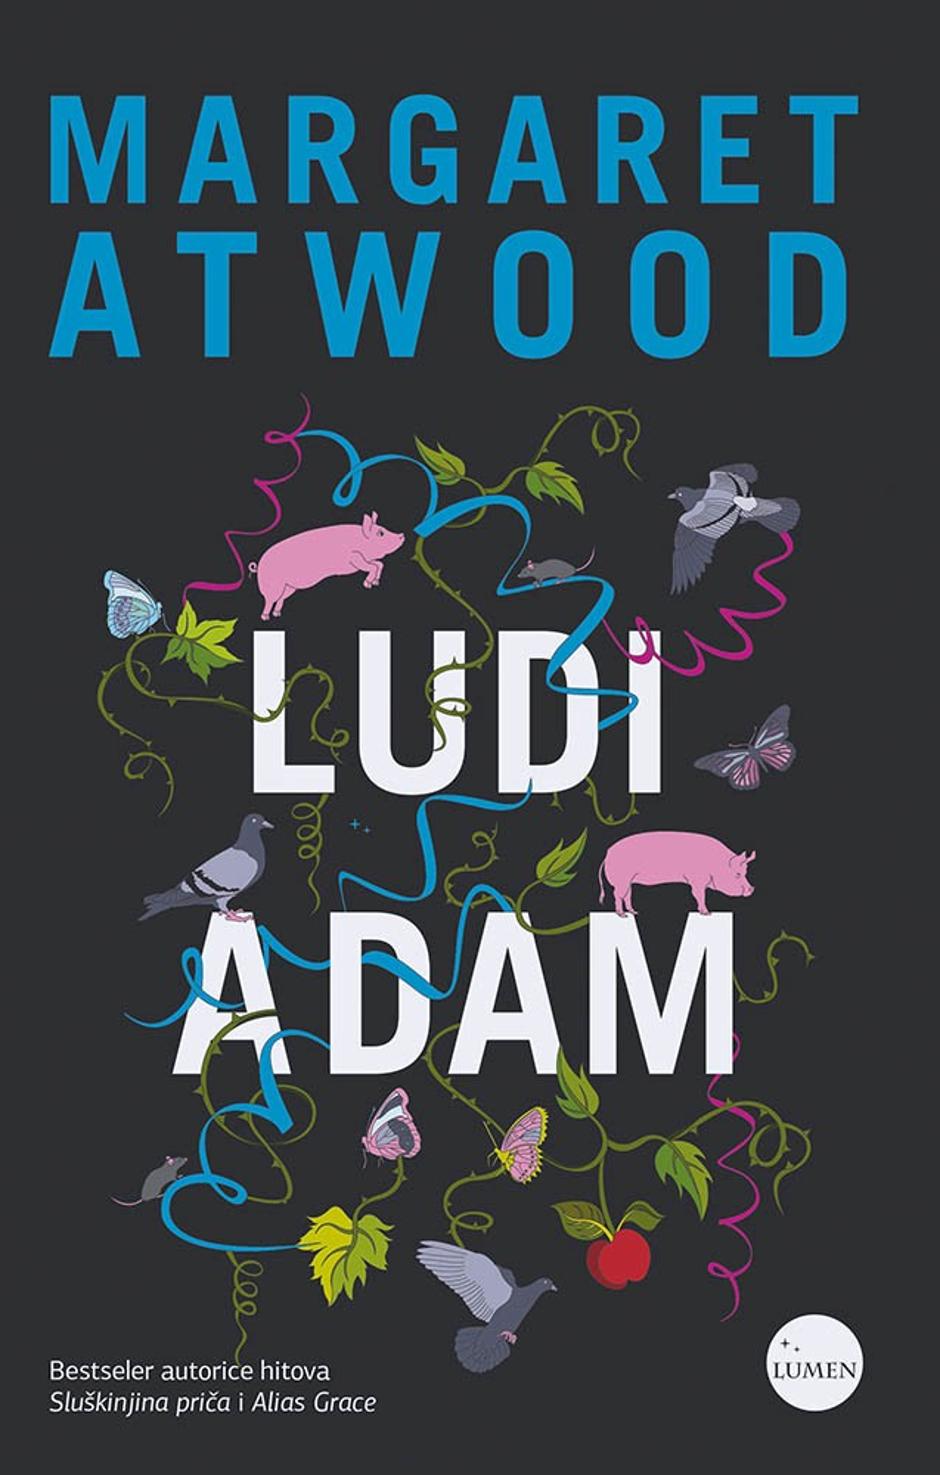 Ludi Adam | Author: Lumen